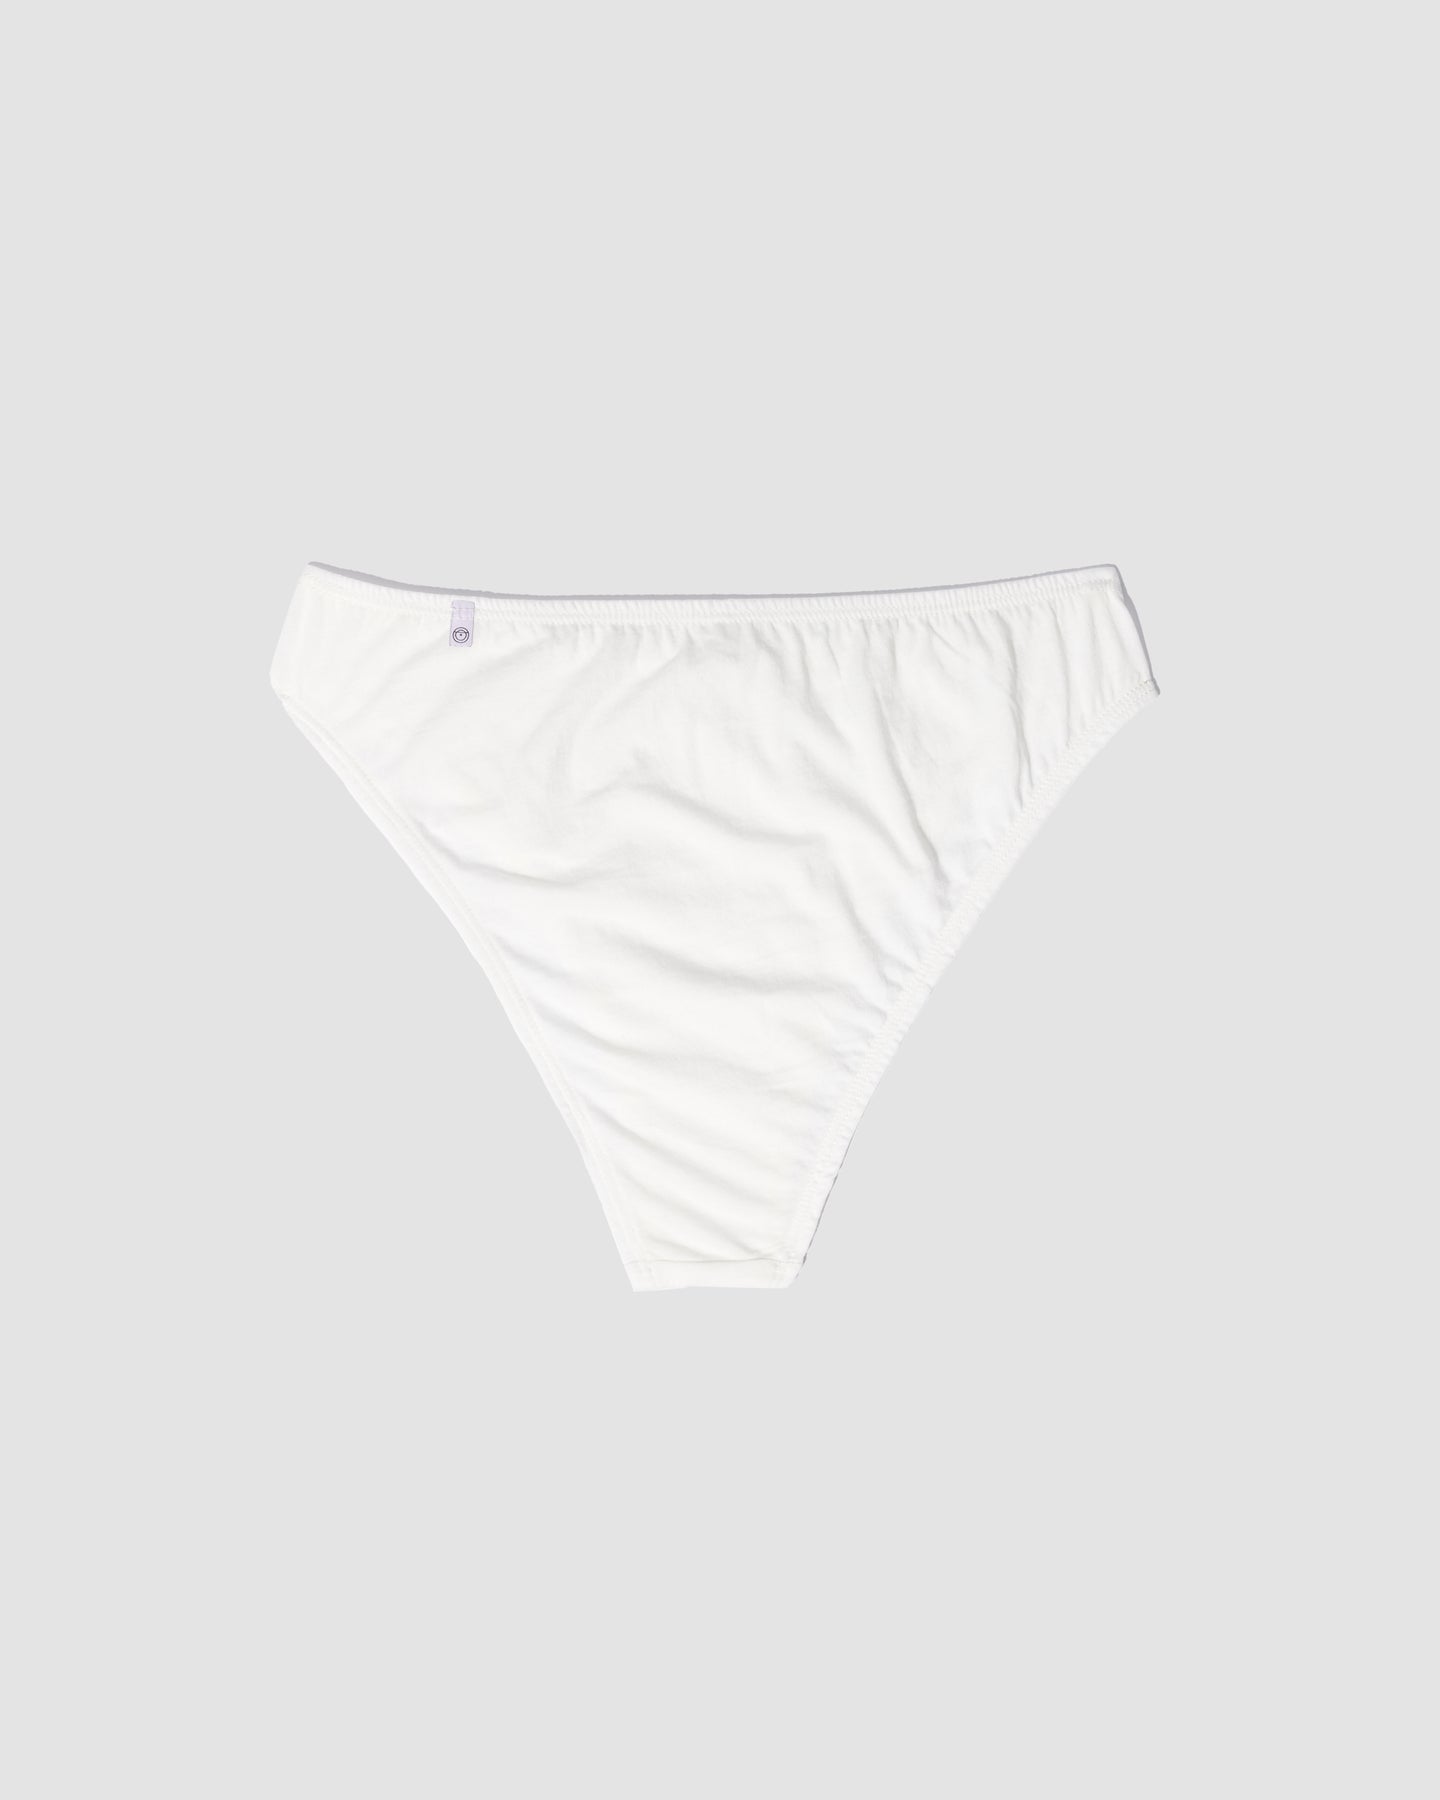 Durable Negative Underwear Cotton French Cut Brief In Sunrise (Pack) New  lowest price - Negative Underwear Sales Shop